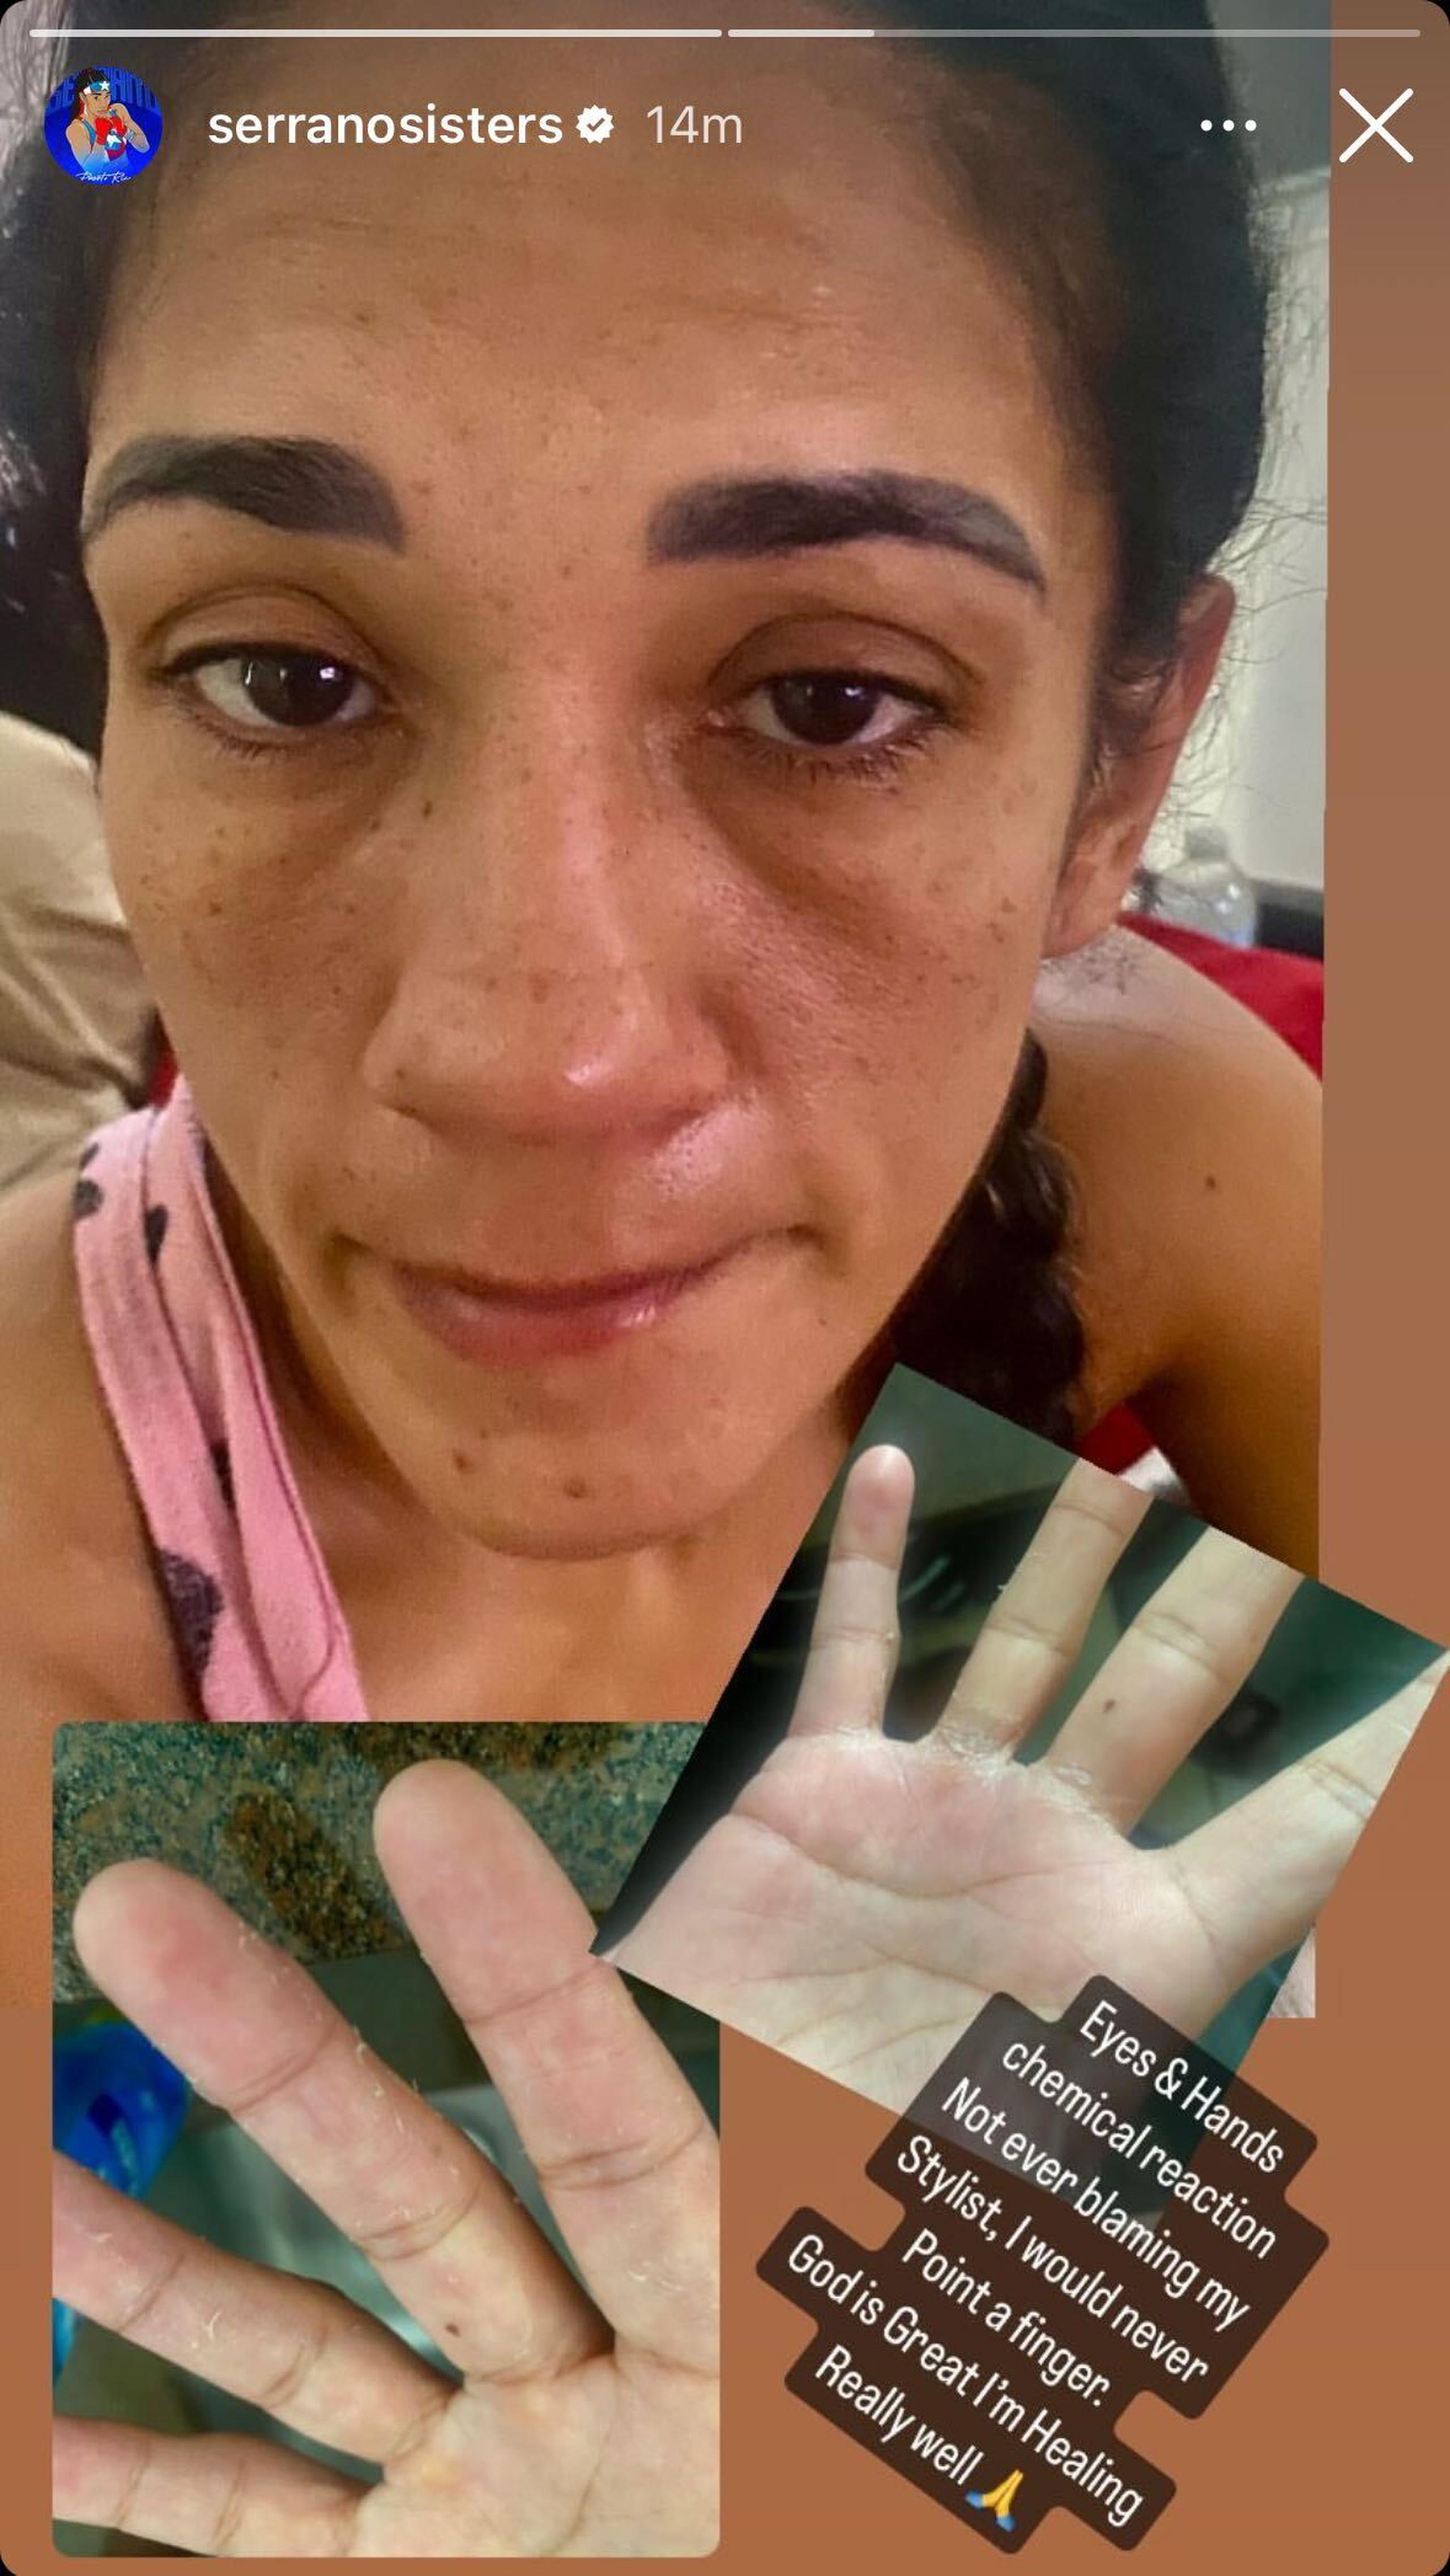 Amanda Serrano muestra sus ojos y manos tras reacción química.